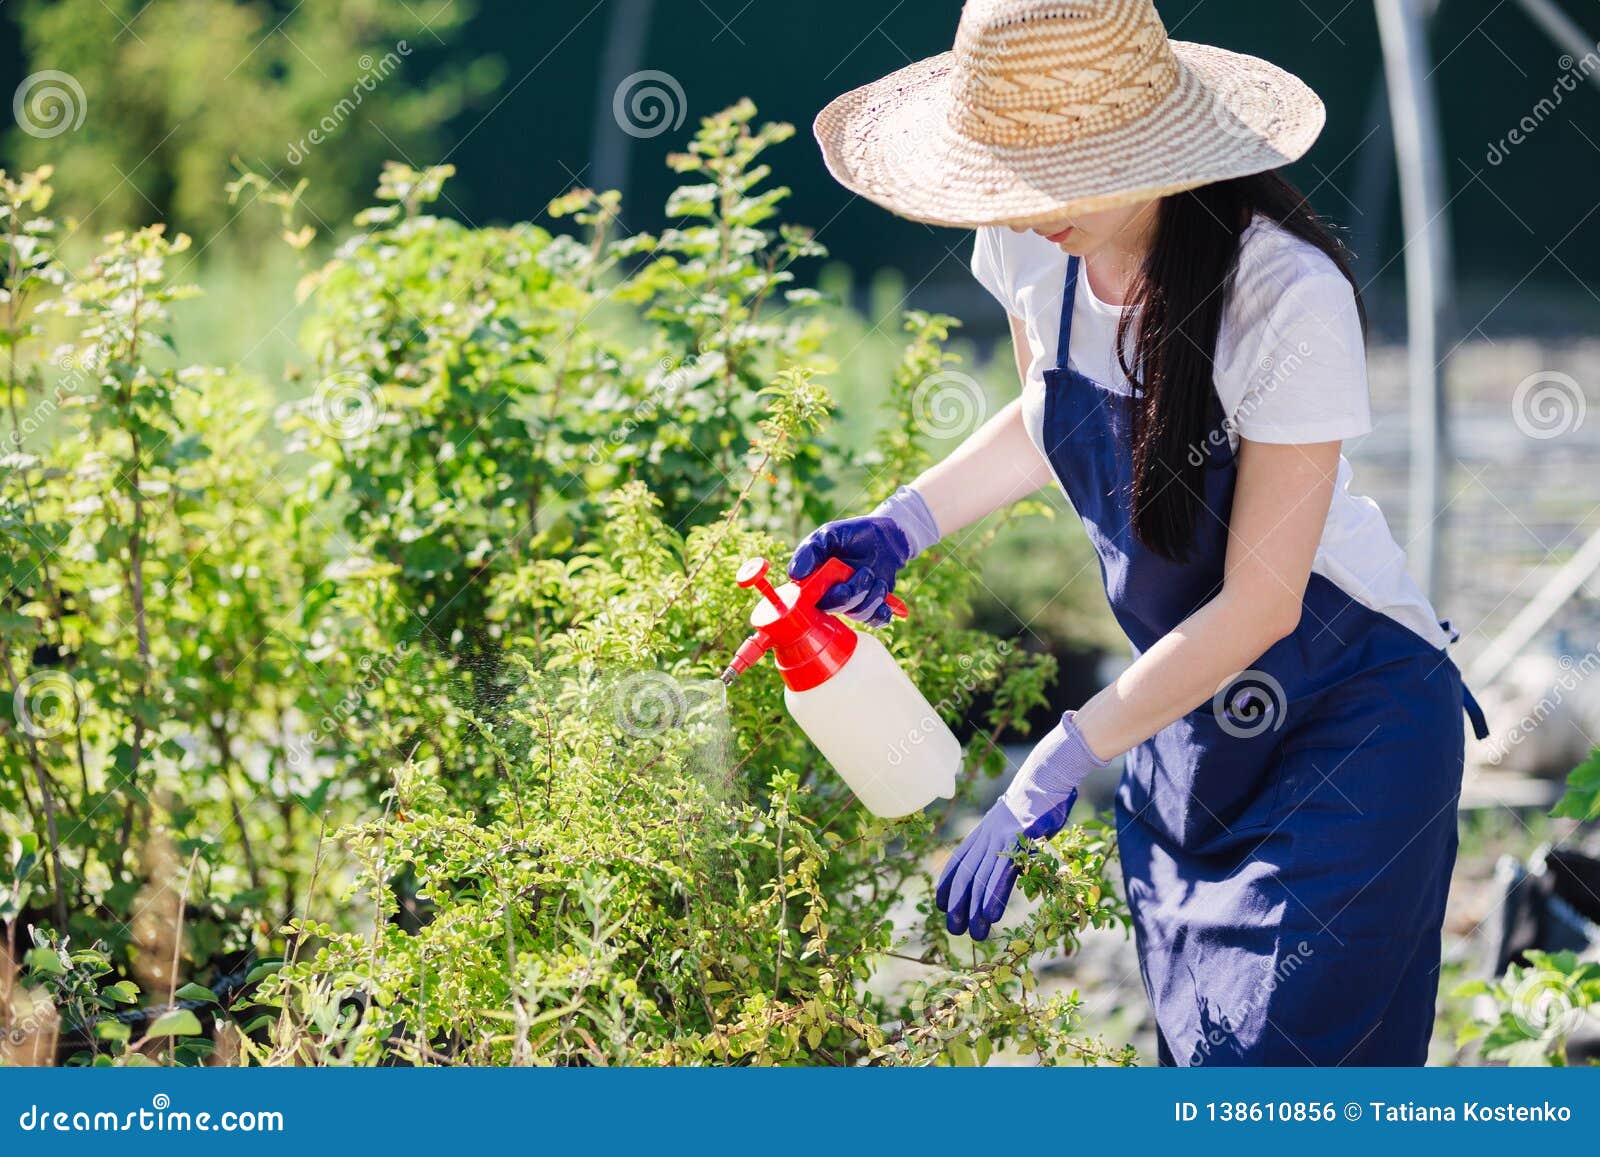 Sombrero de paja en jardín con plantas.